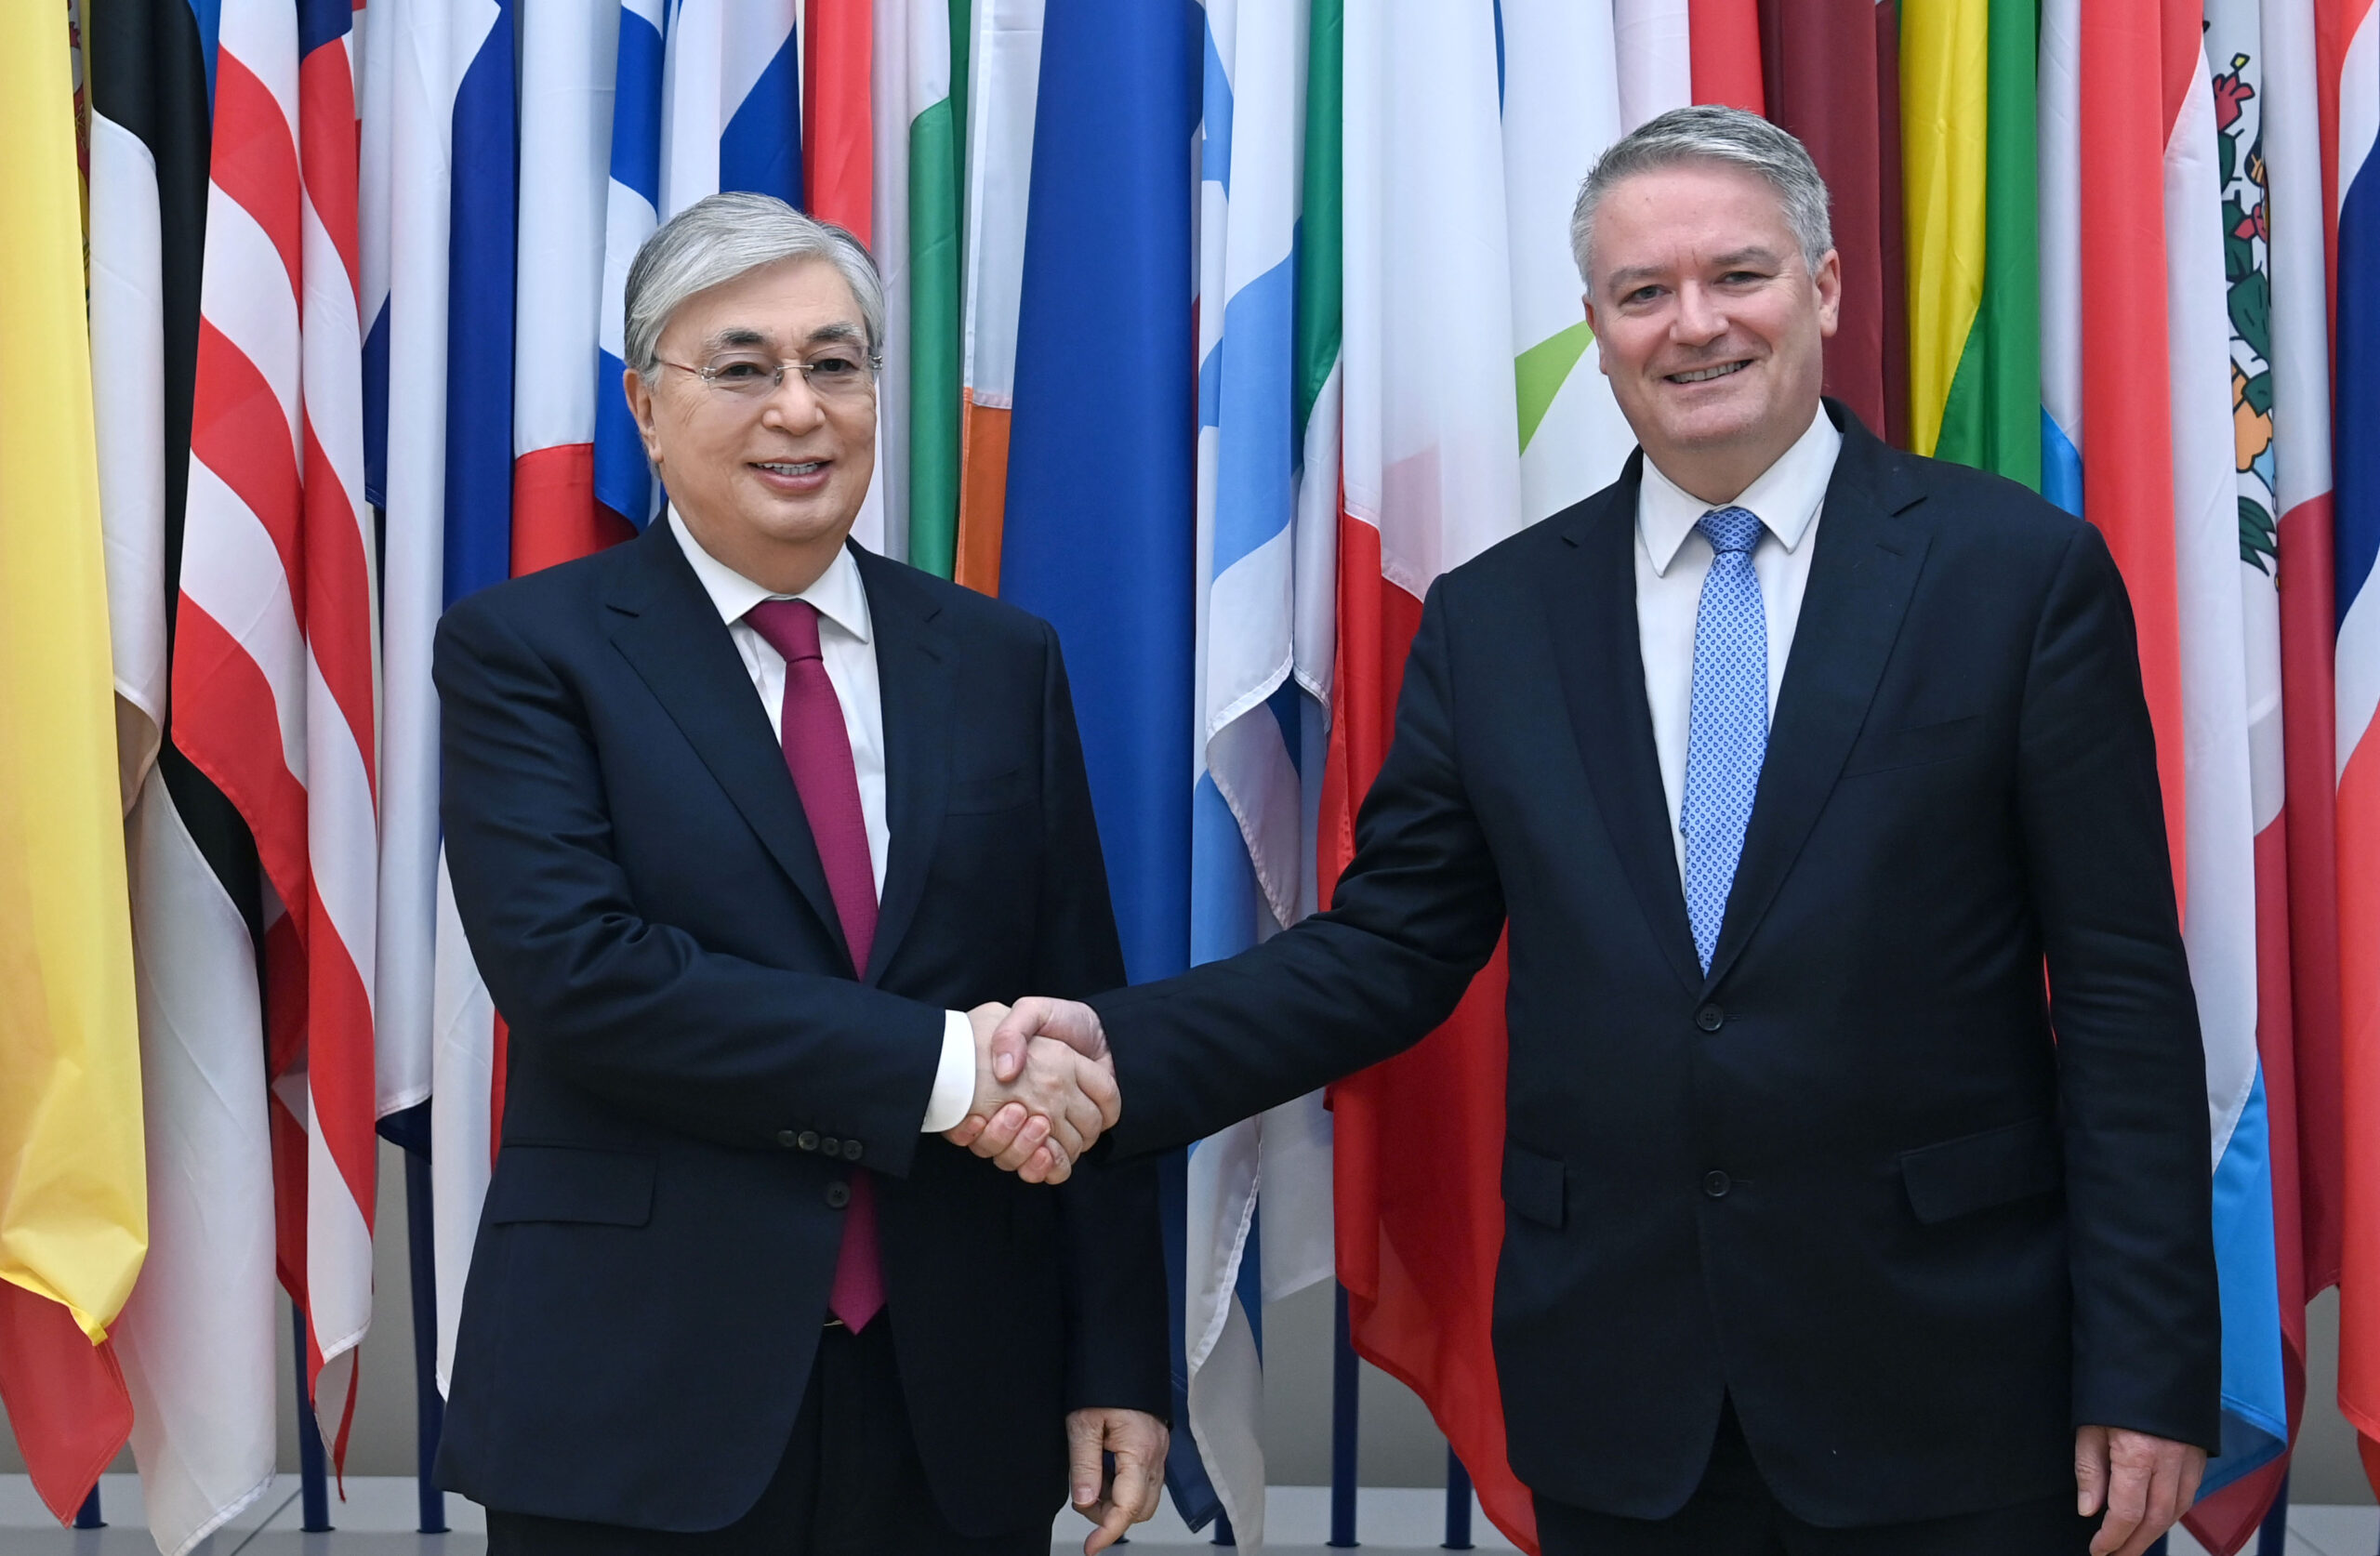 Le président kazakh affirme la coopération avec l’Organisation de coopération et de développement économiques et conclut sa visite en France par des accords bilatéraux